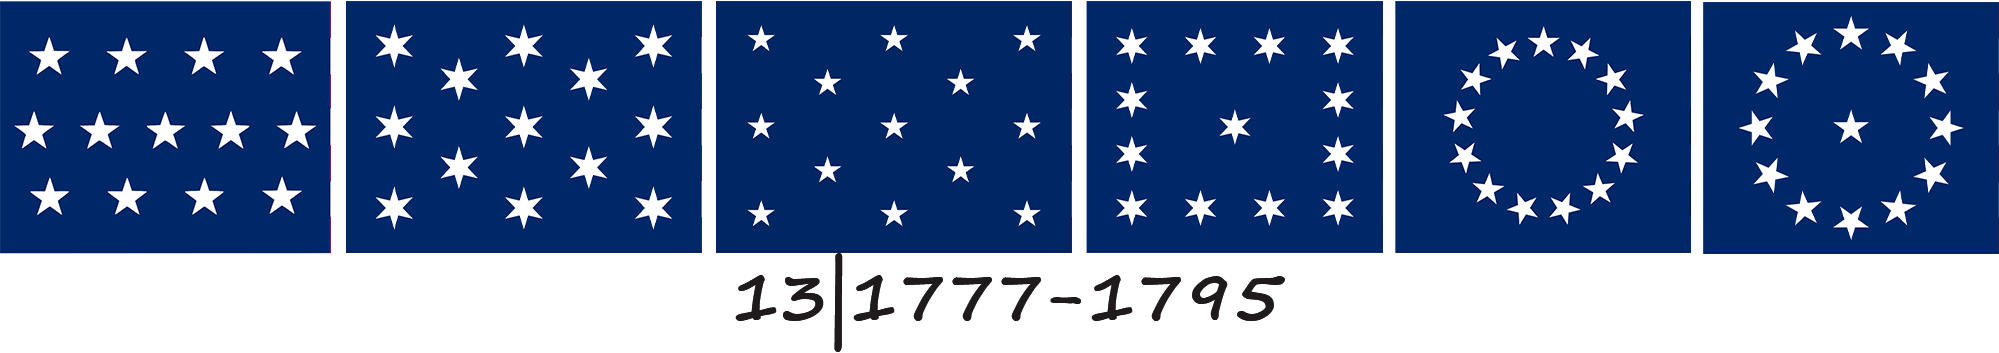 Прапор Сполучених Штатів Америки з 13 зірками